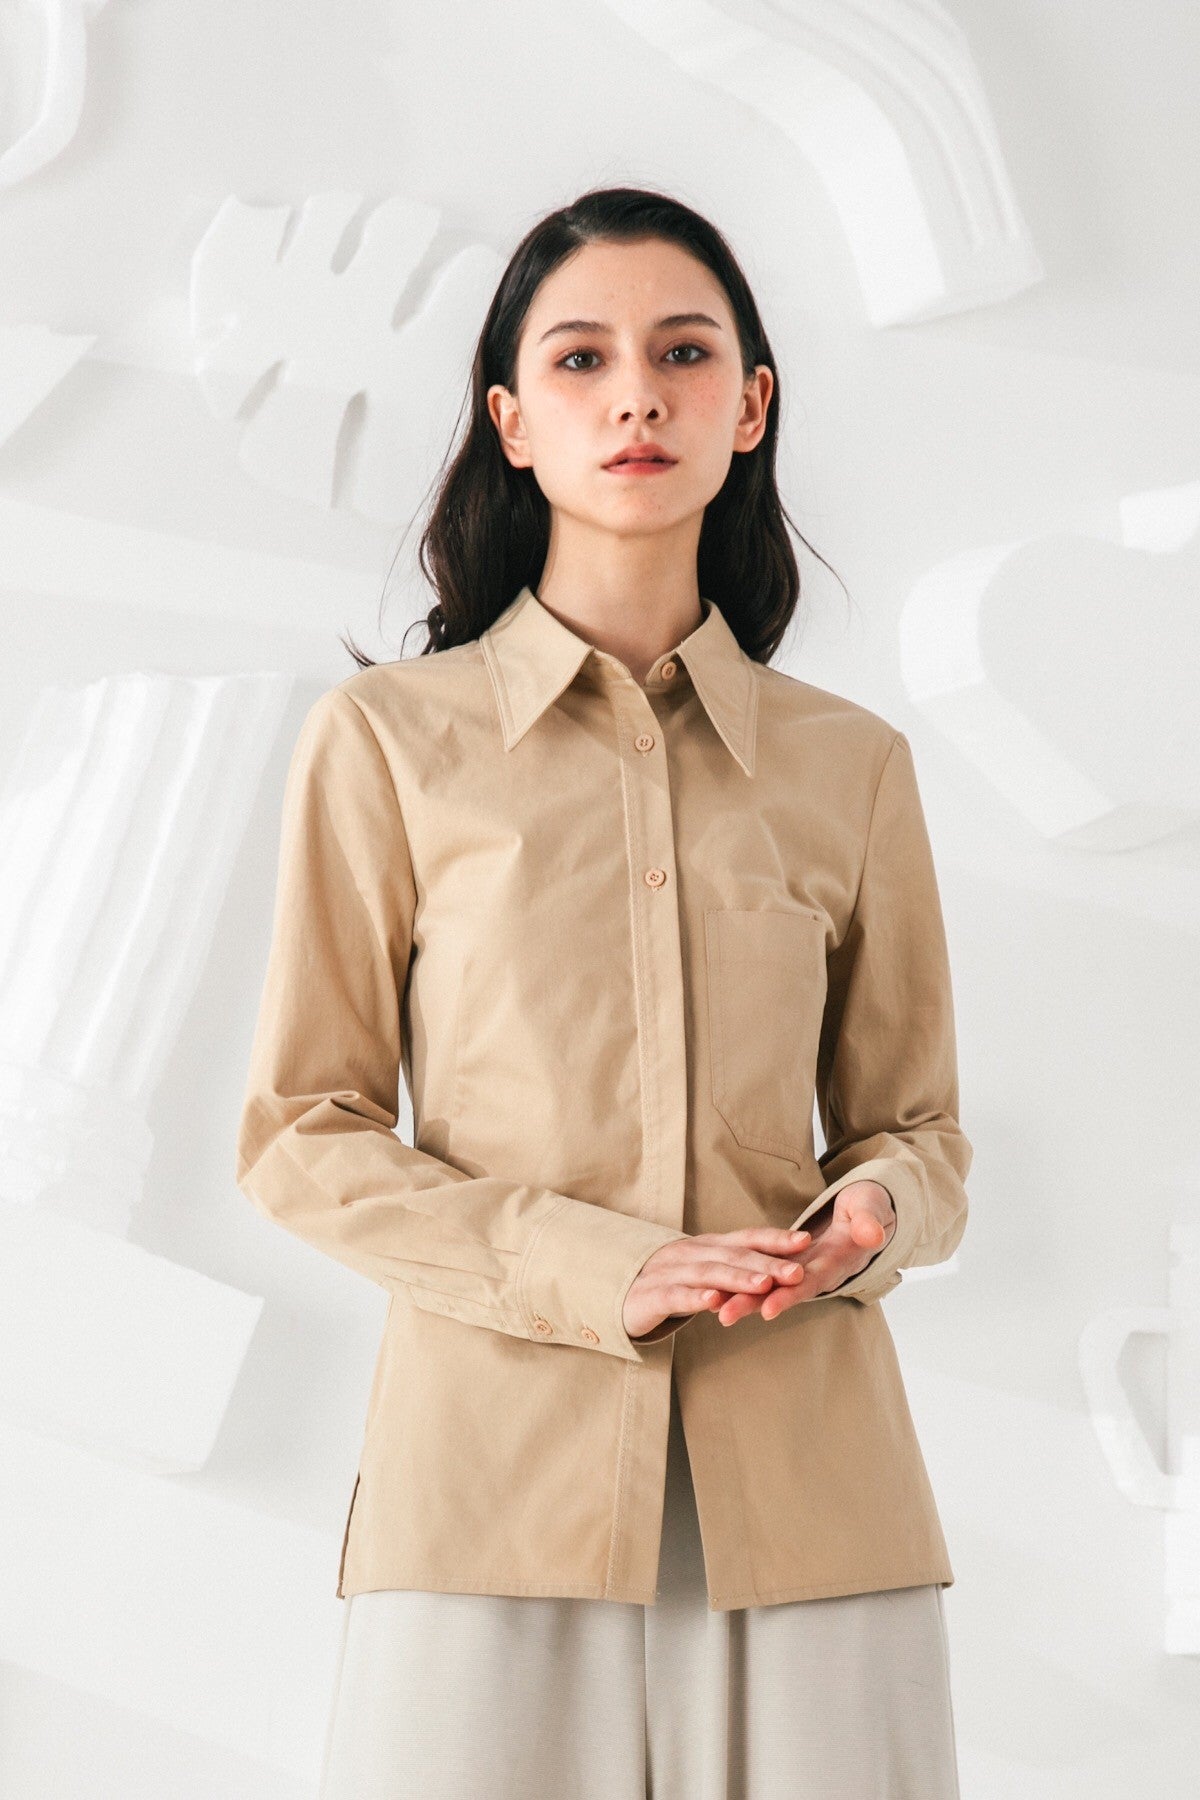 SKYE San Francisco SF shop ethical modern minimalist quality women clothing fashion Audrey Shirt beige